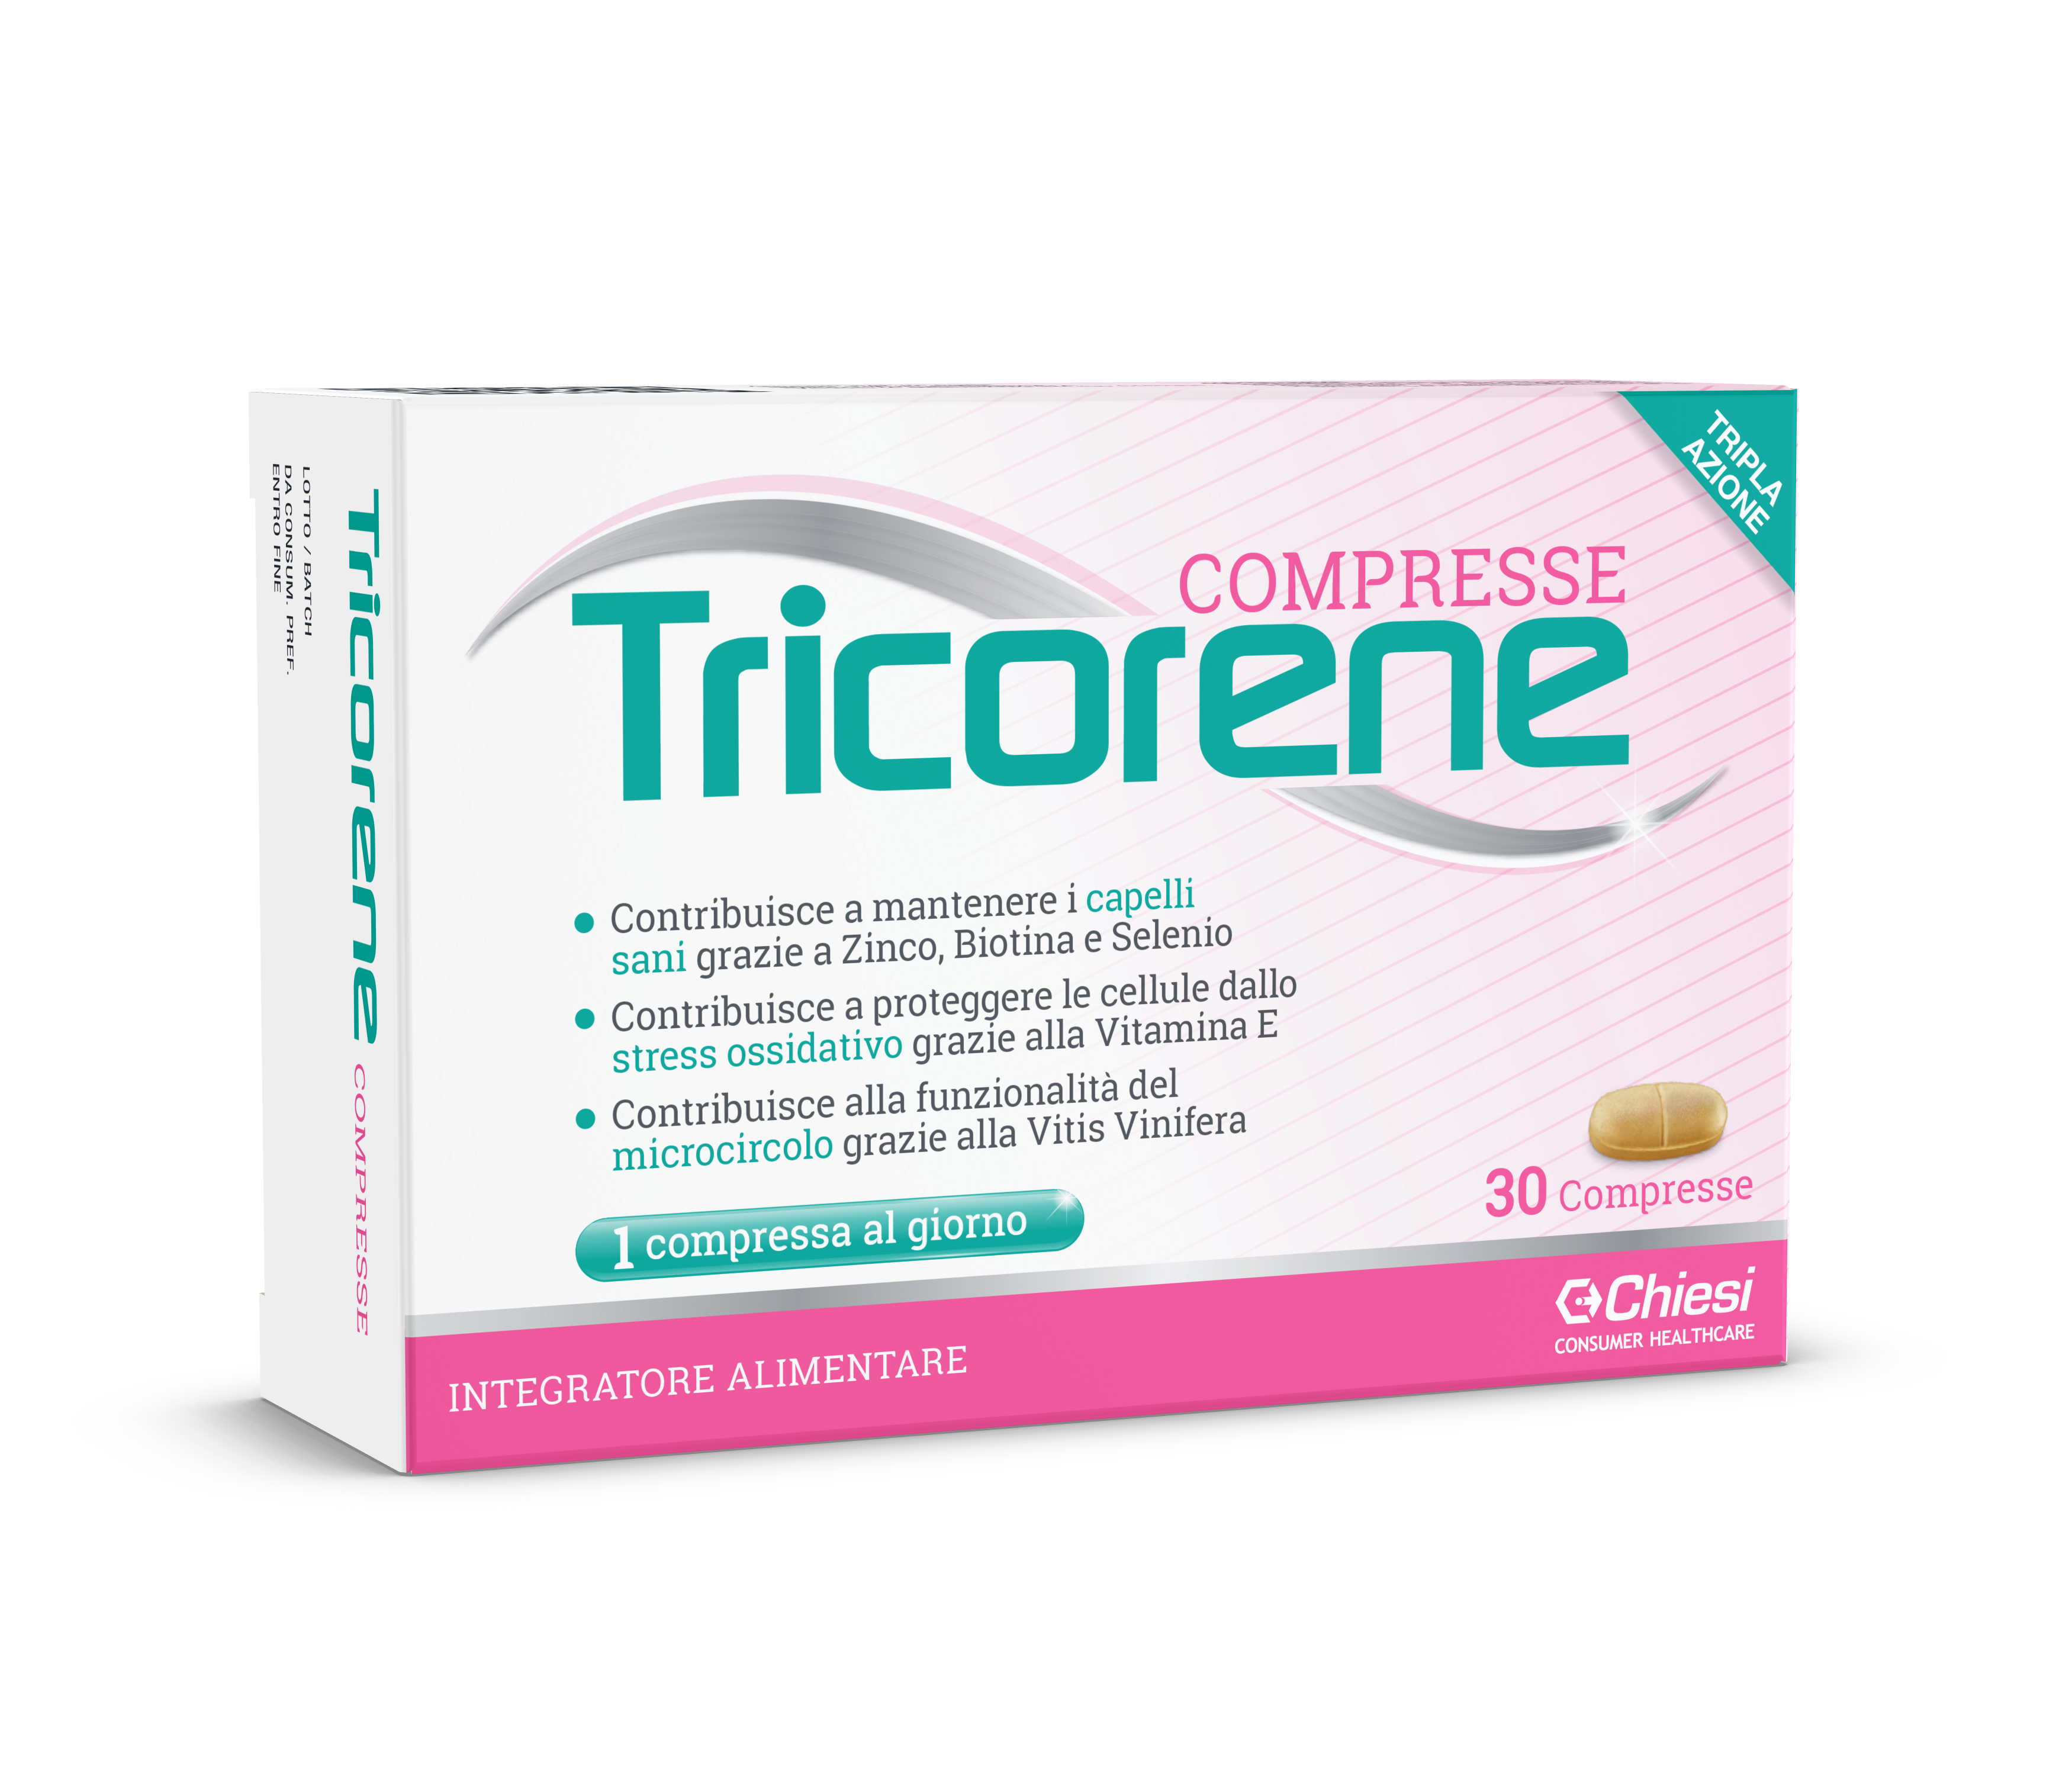 Immagine della confezione di Tricorene, farmaco di Chiesi Farmaceutici S.p.A.